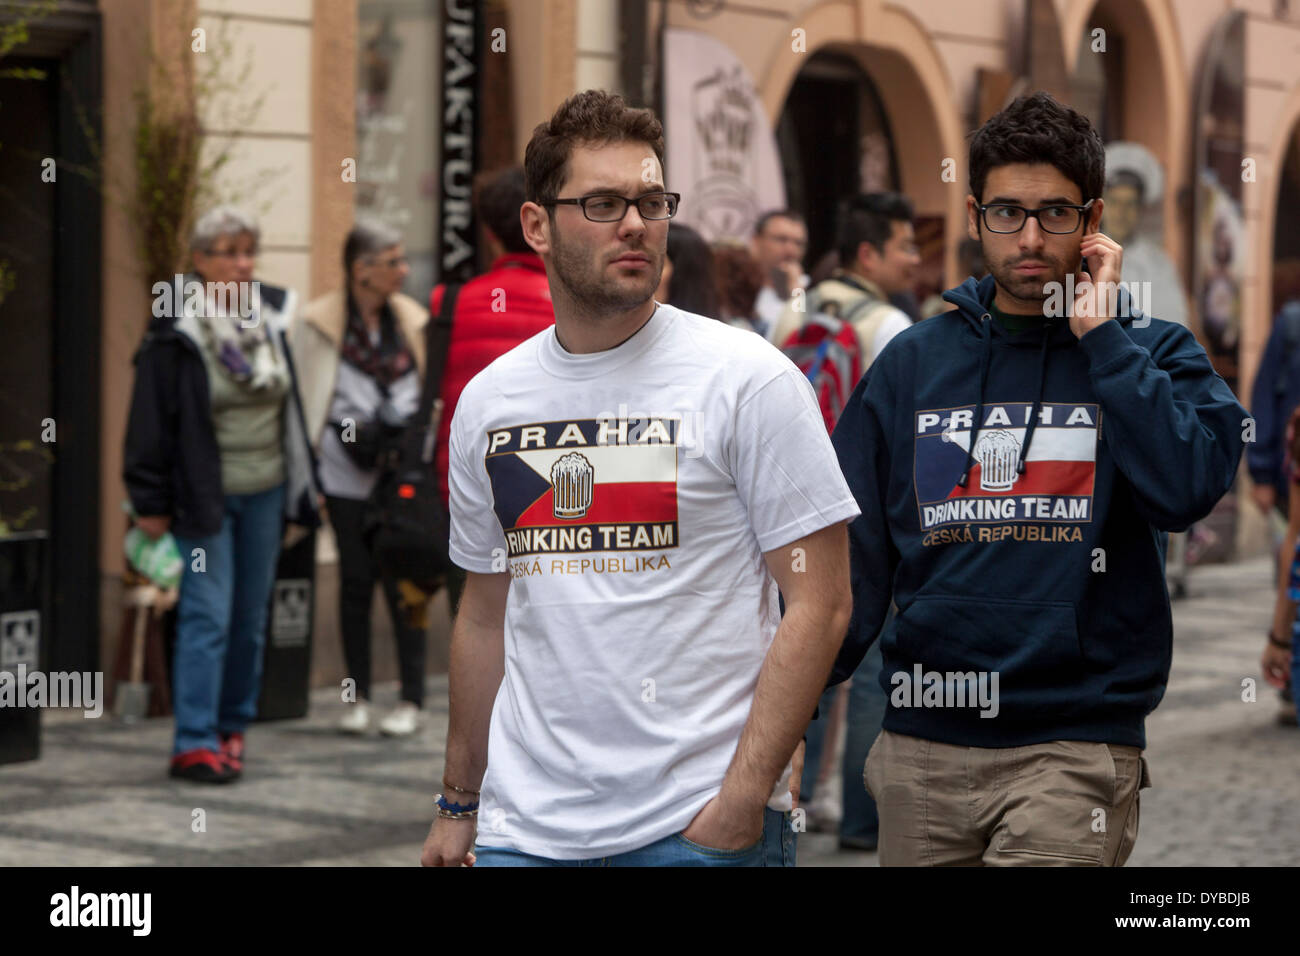 Drinking team T-shirt in Prague Czech Republic Stock Photo